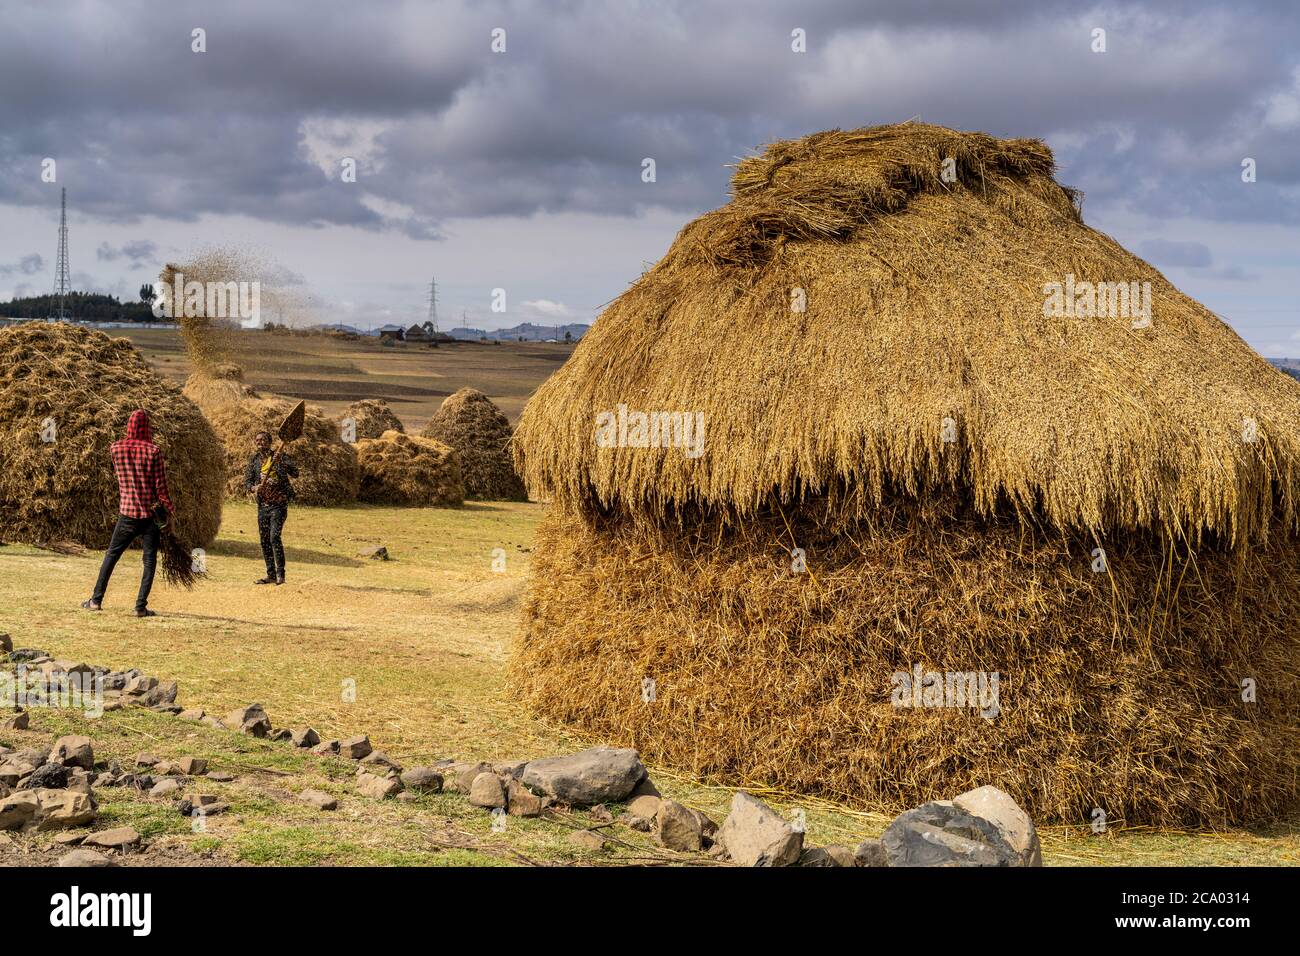 La gente che batte grano vicino a capanne tetto di paglia, provincia di Wollo, regione di Amhara, Etiopia, Africa Foto Stock